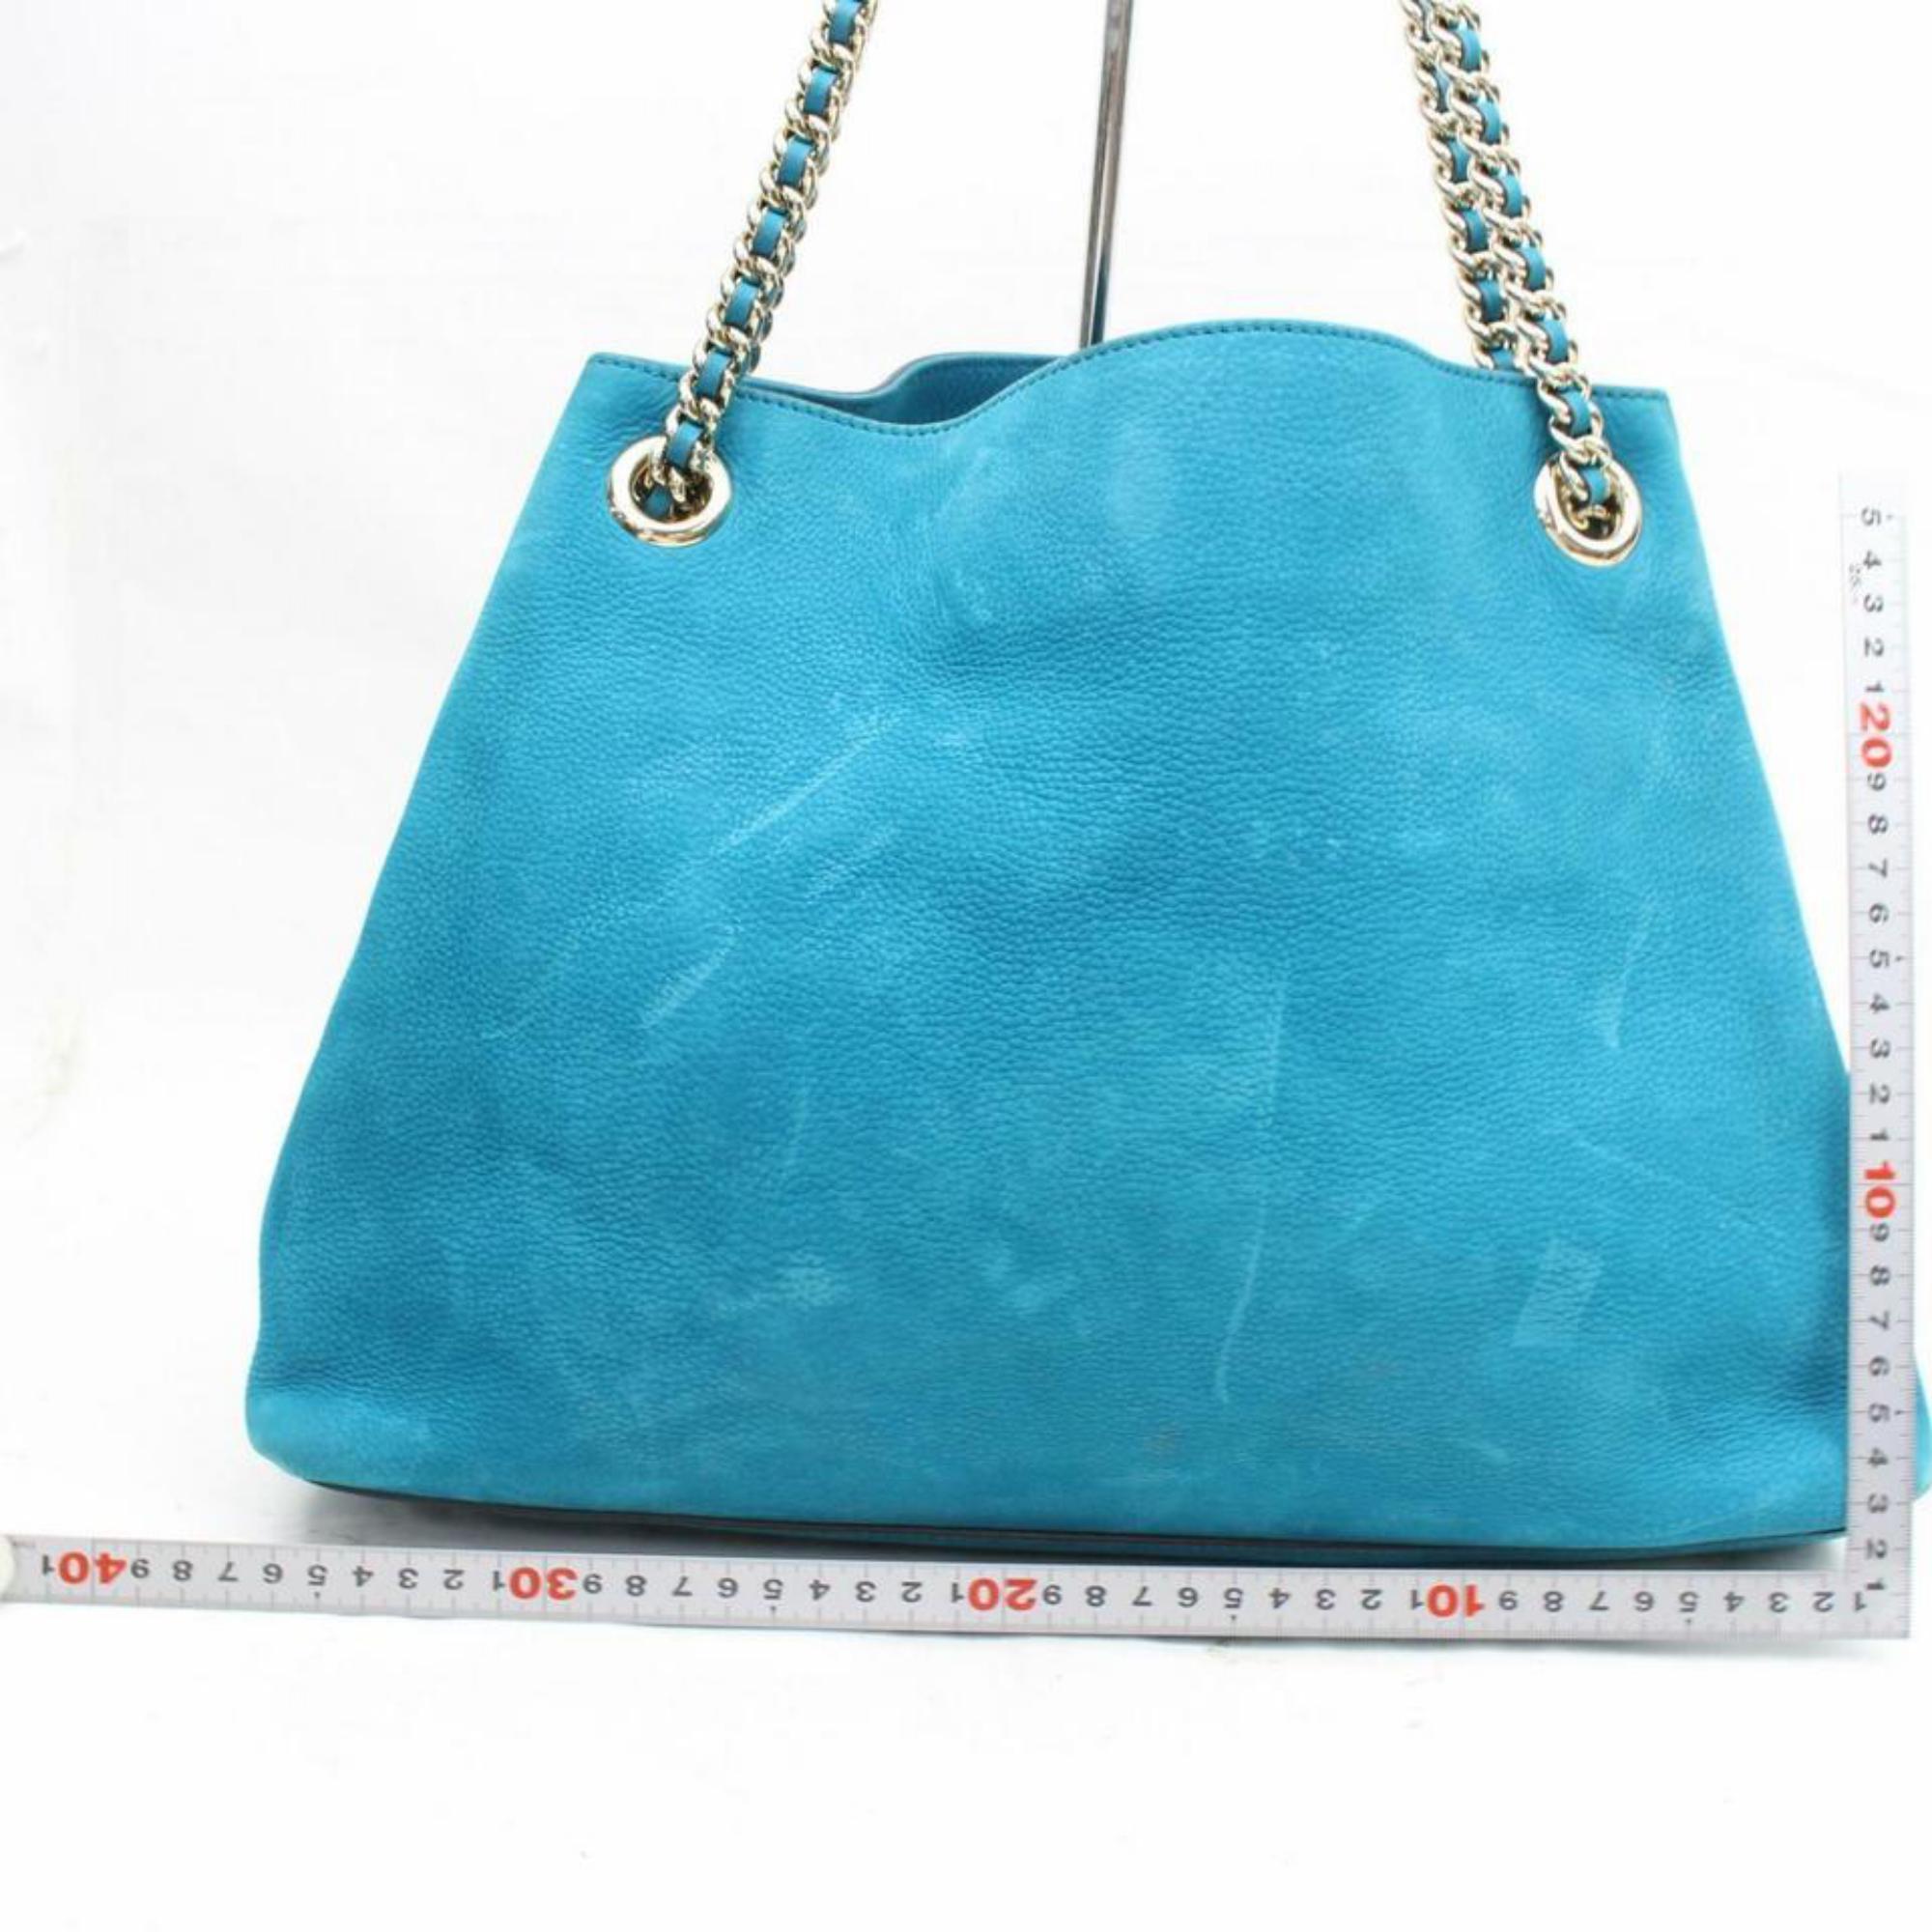 Gucci Soho Fringe Tassel Chain Tote 869786 Blue Nubuck Leather Shoulder Bag For Sale 2